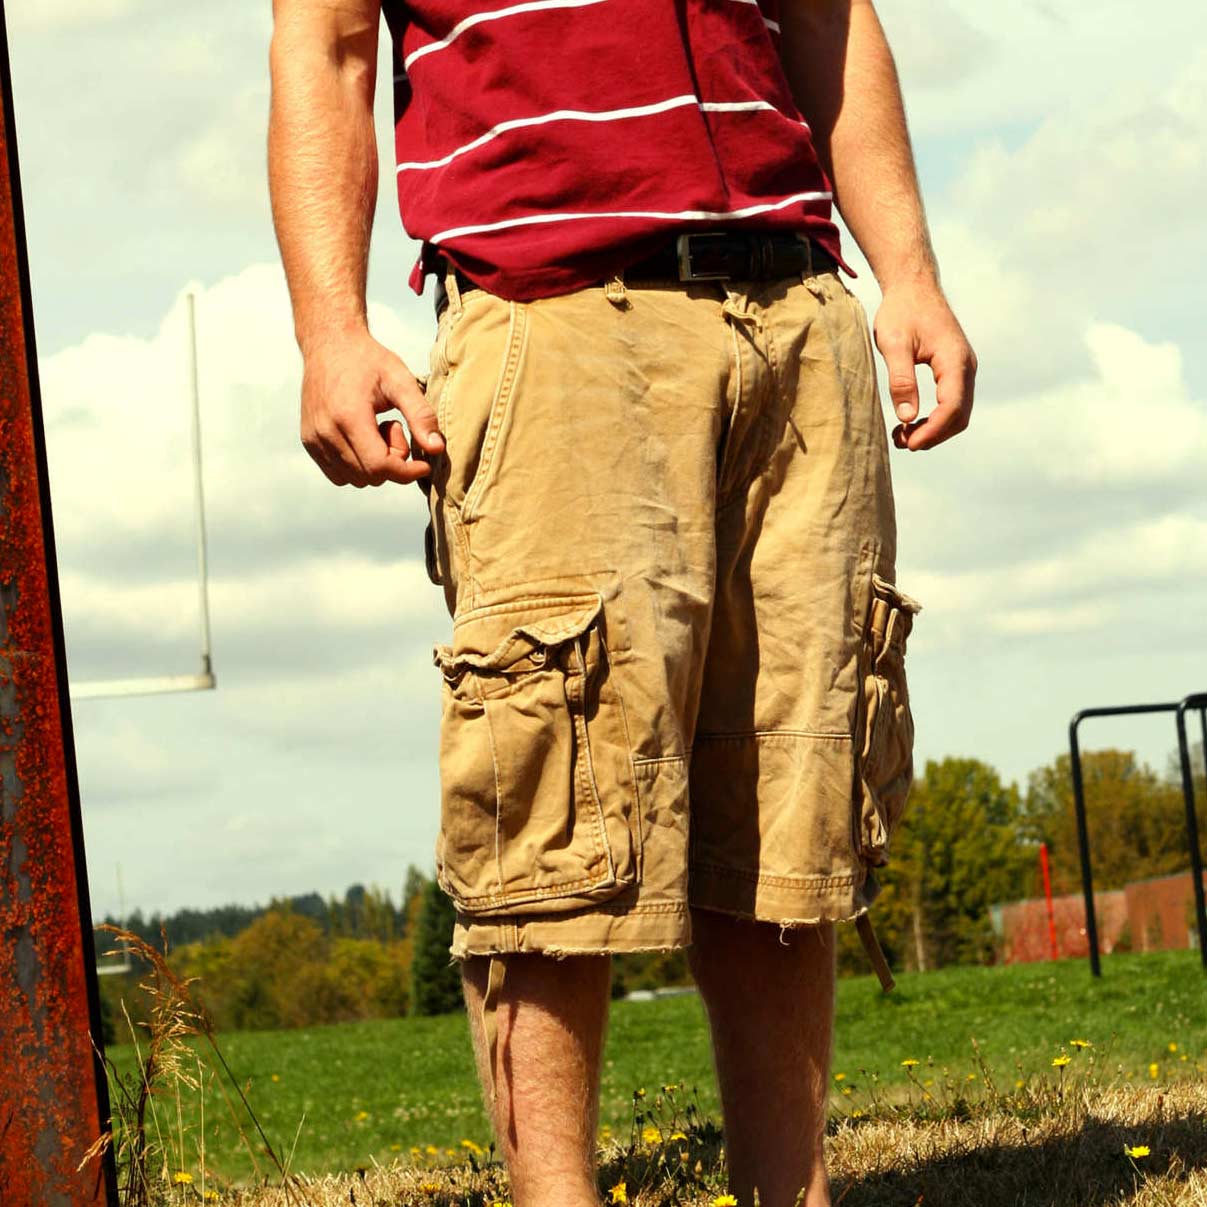 Man wearing Cargo Shorts